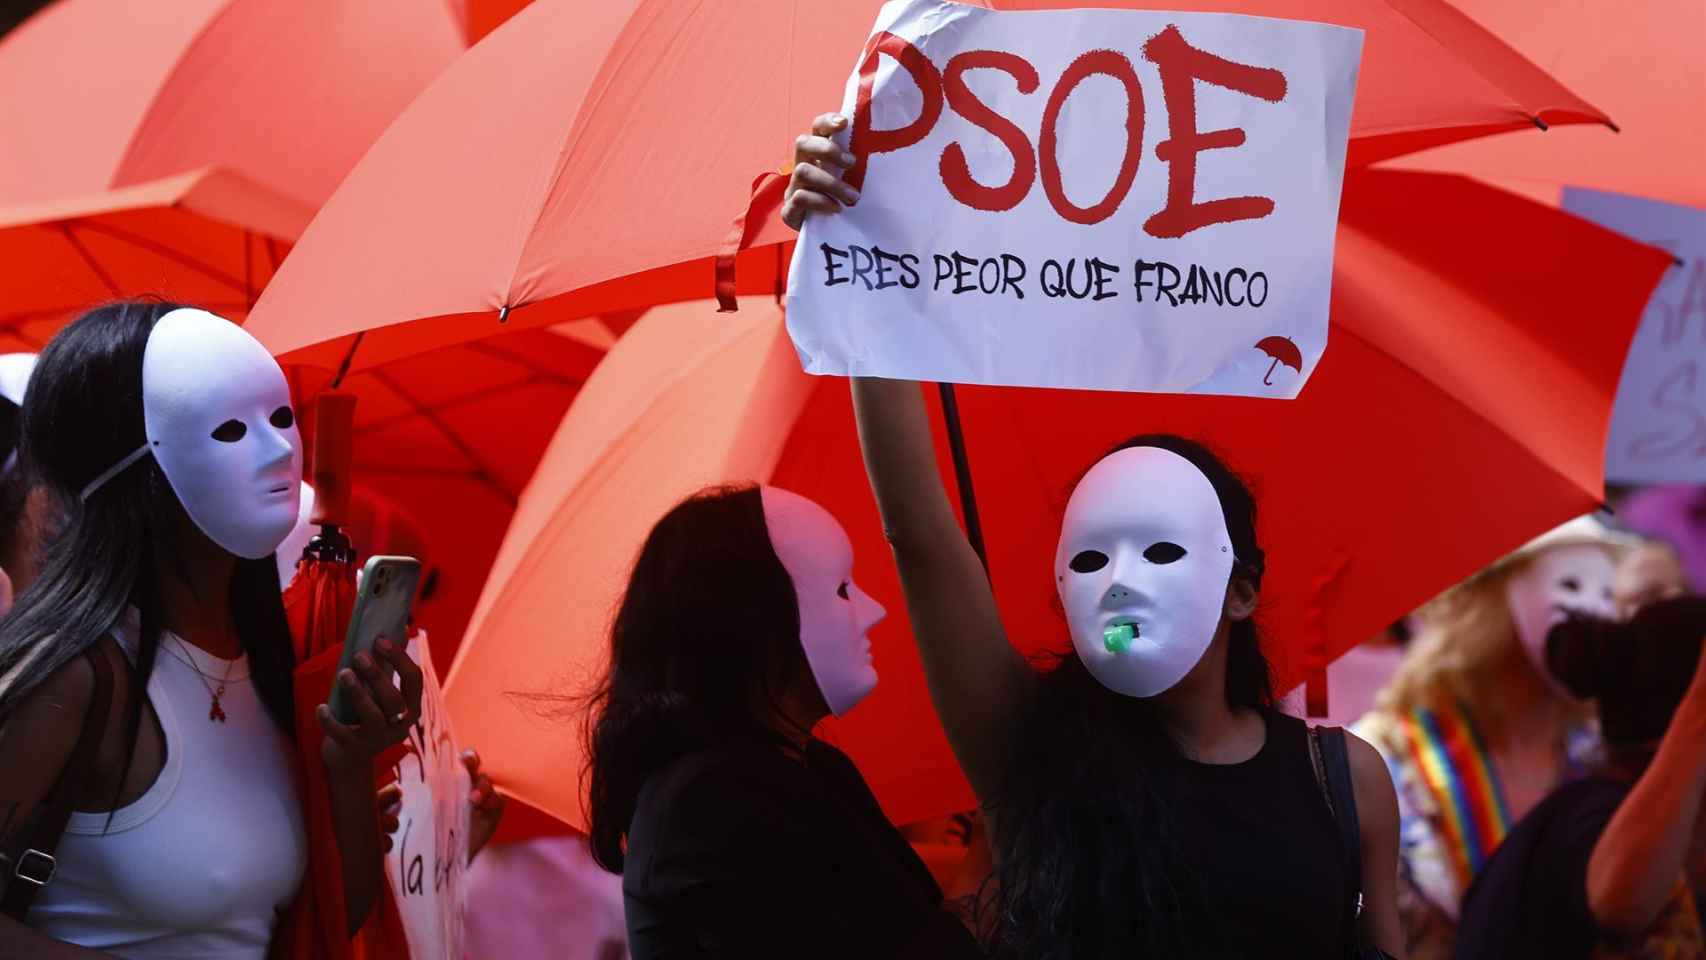 Prostitutas en Ferraz en contra de la ley del PSOE para abolir esta  práctica: "Sois peor que Franco"